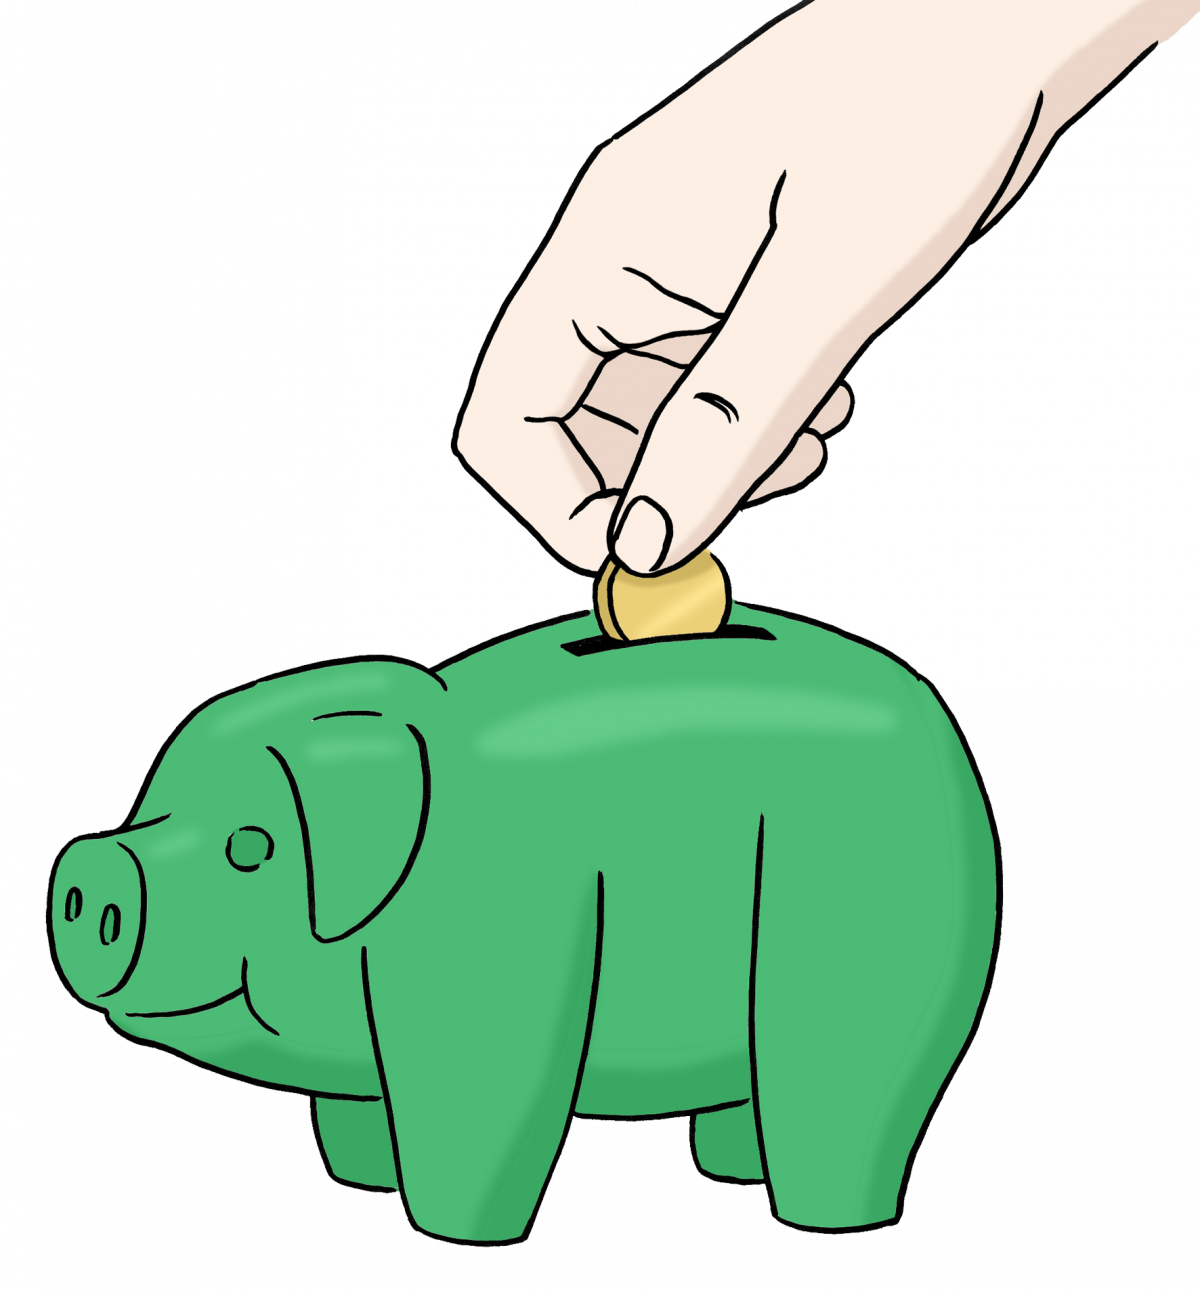 Zeichnung eines grünen Sparschweins, in das gerade eine Münze geworfen wird.